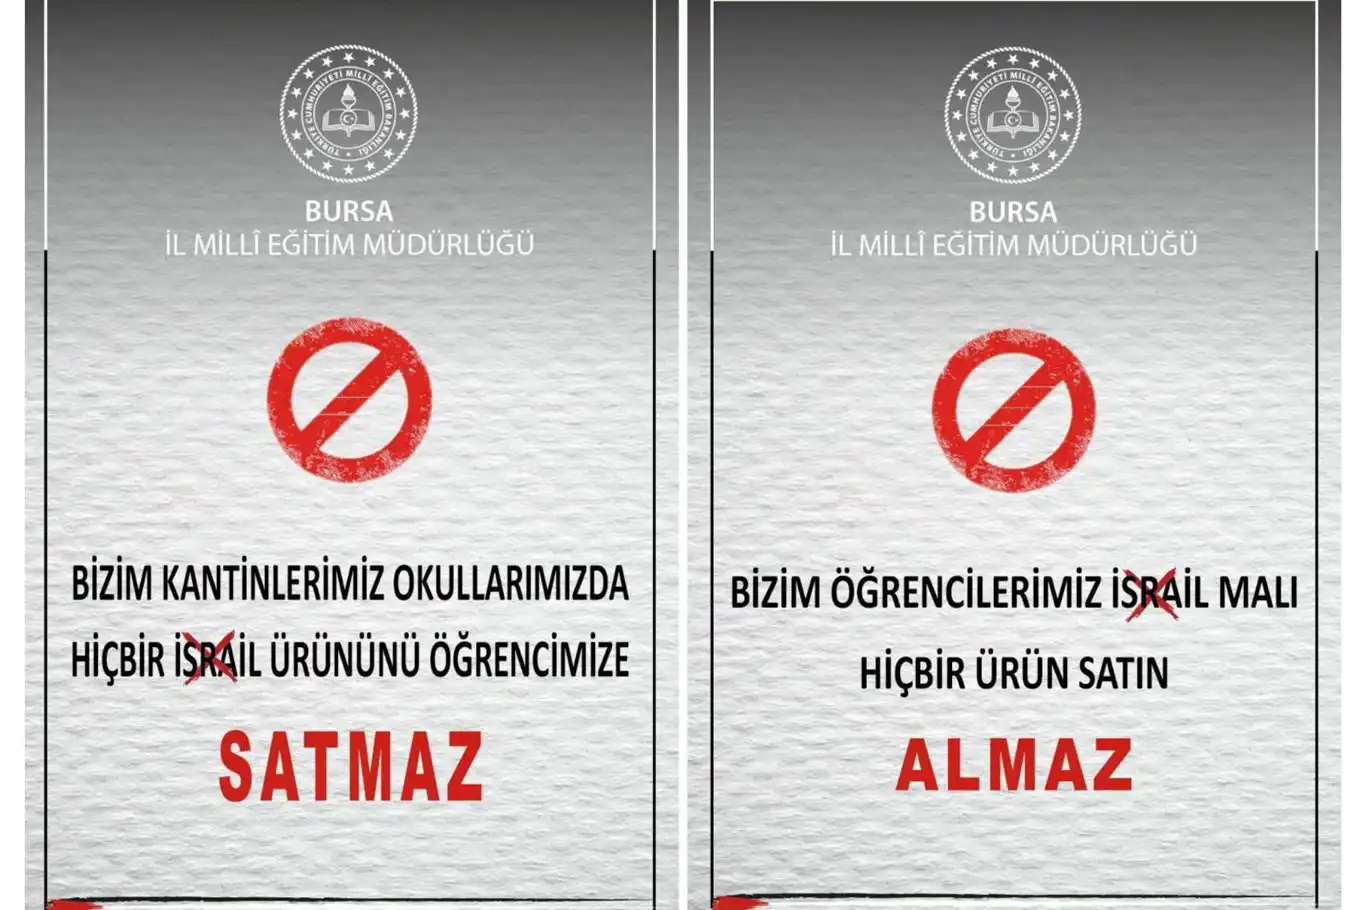 Bursa Milli Eğitim Müdürlüğü işgalci rejimin ürünlerini boykot kararı aldı